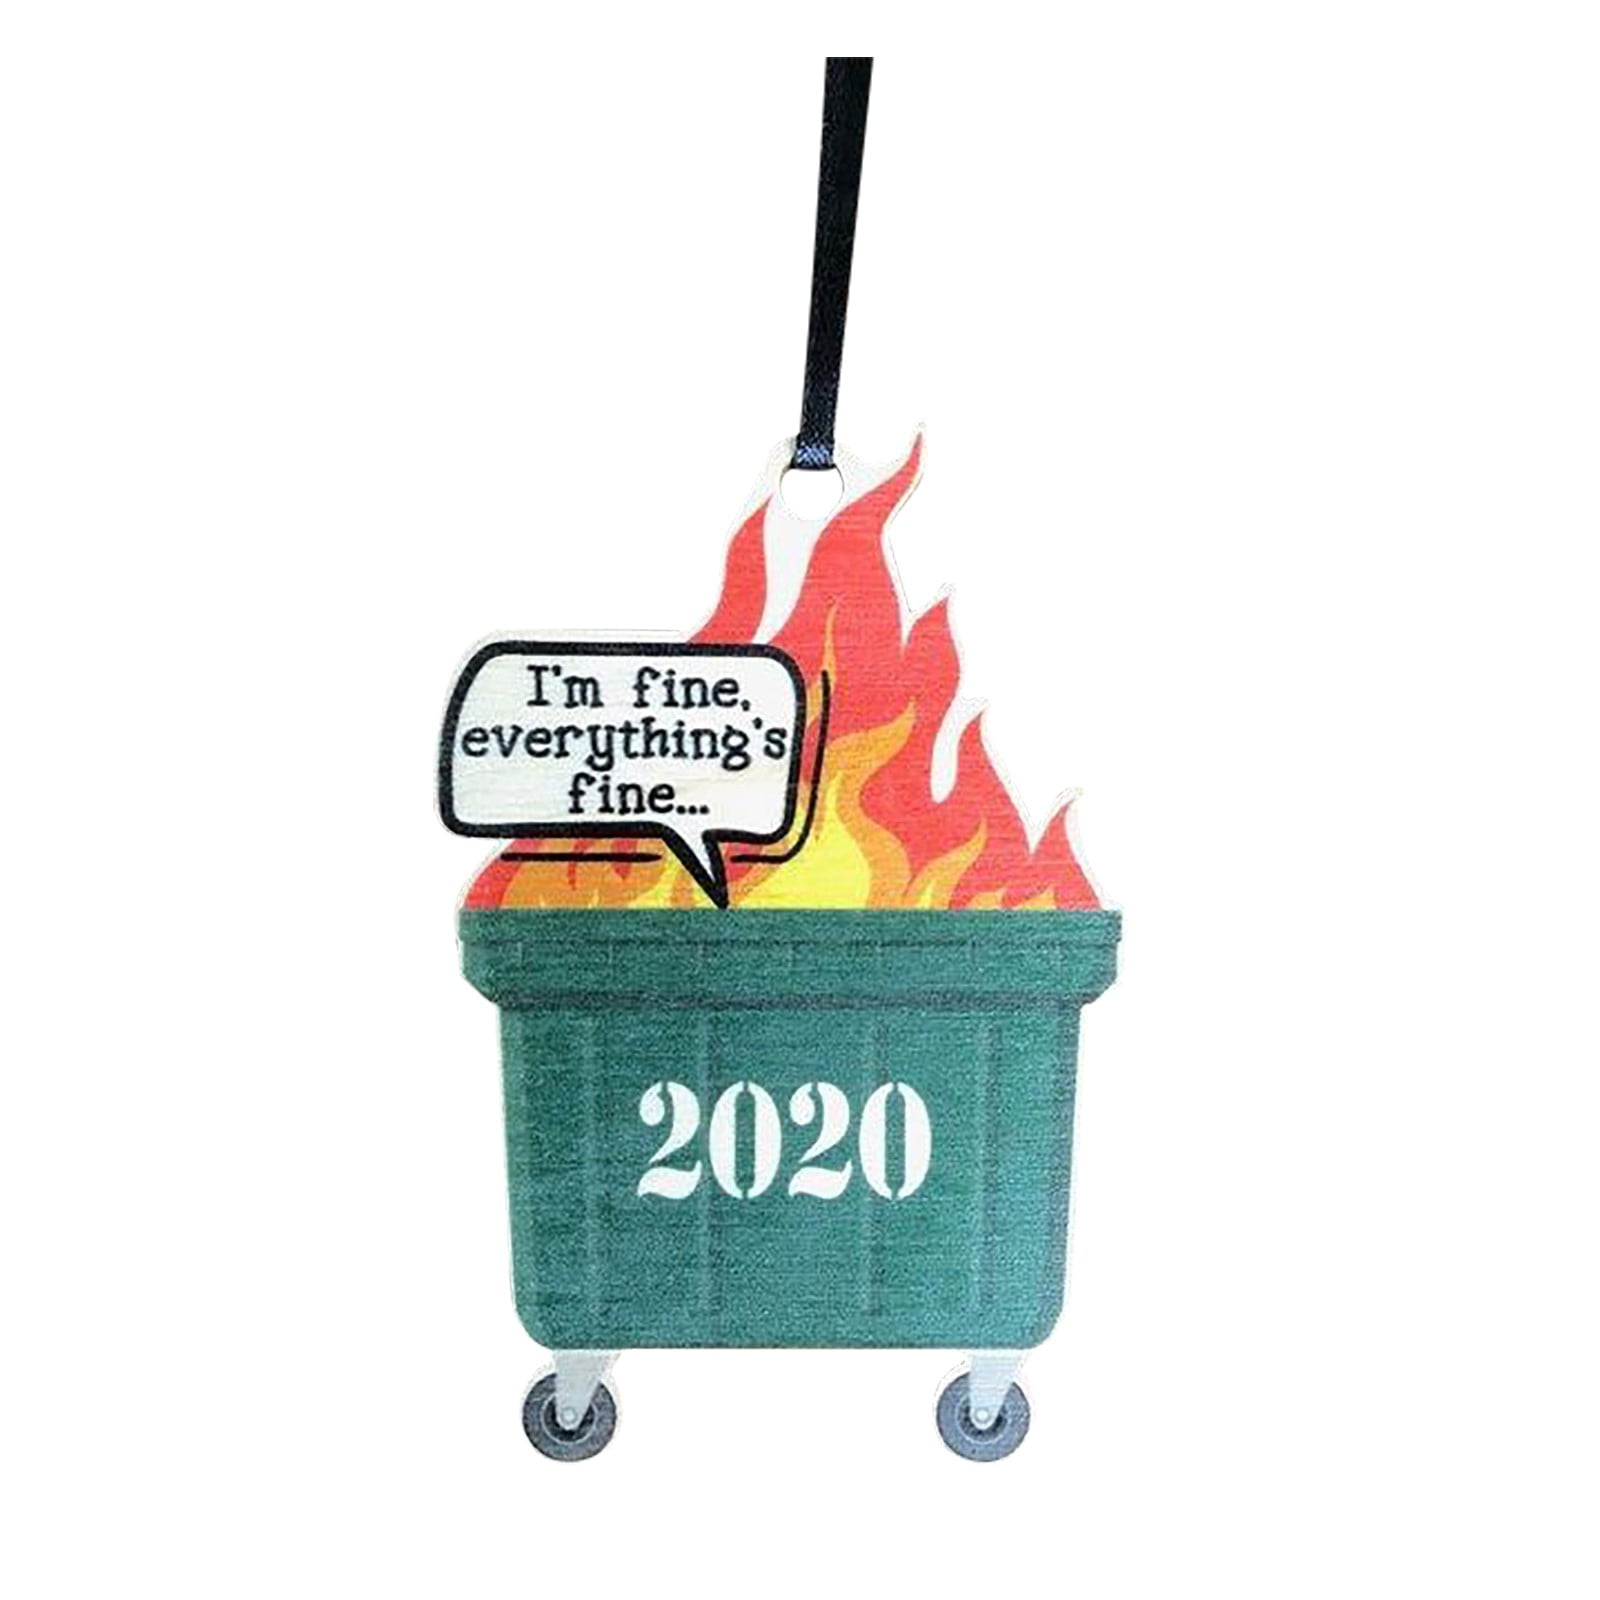 2020 Dumpster Fire ornament